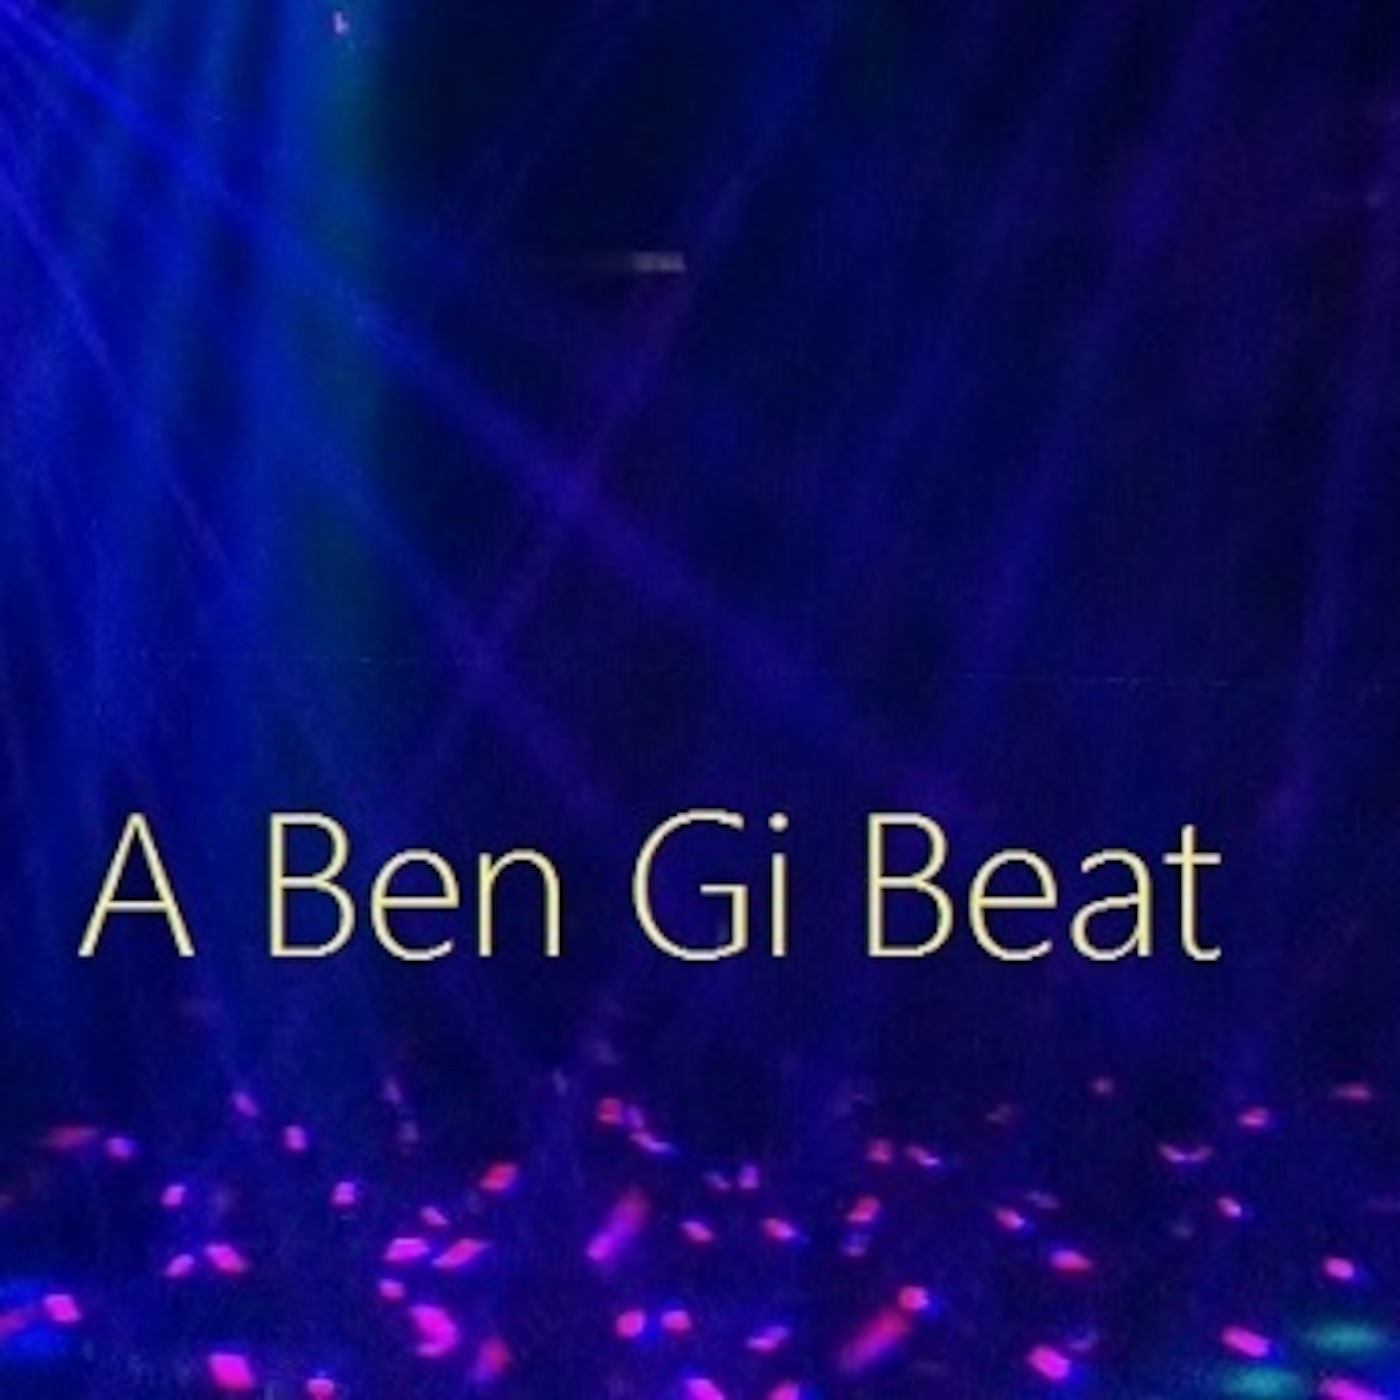 Ben Gi Beats - Pop, Dance and Electronic Music Mixes